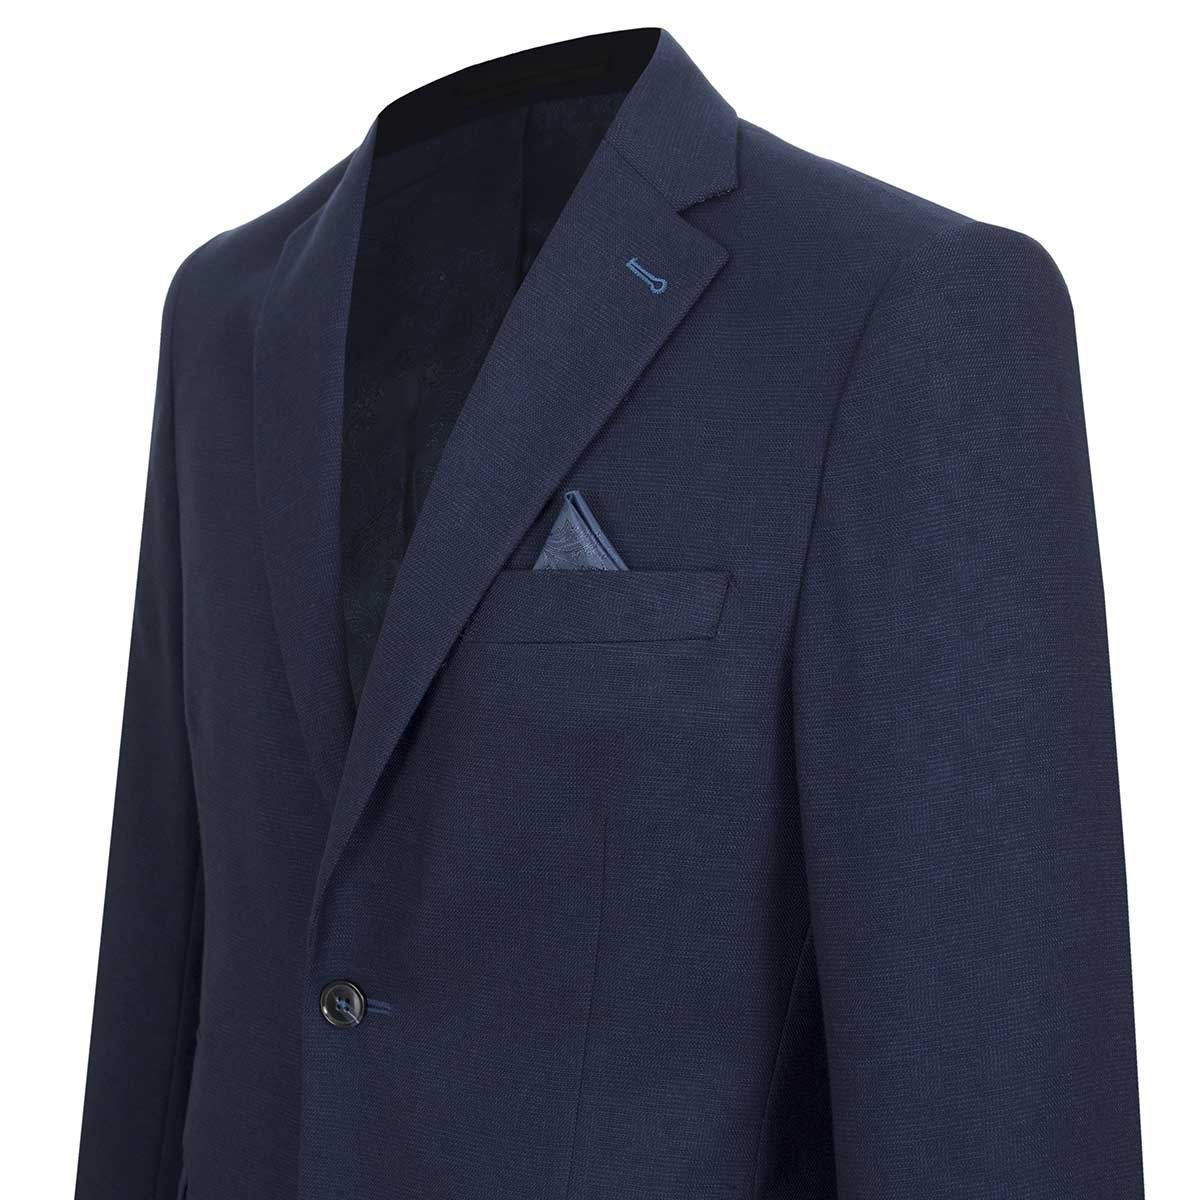 Saco de Vestir para Caballero Azul Marino Polo Club